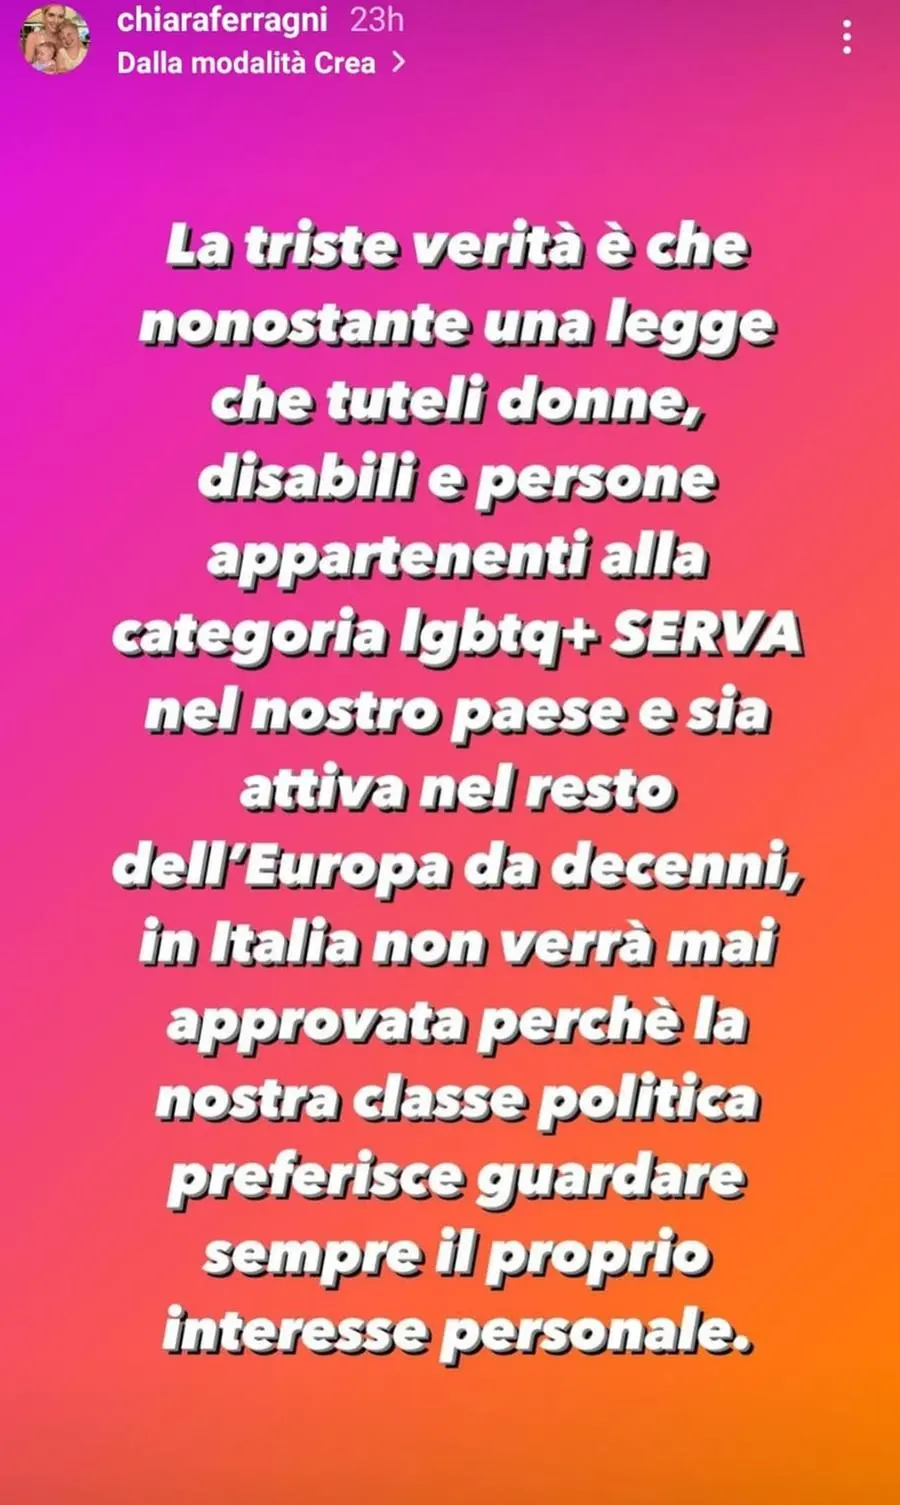 Le storie Instagram di Chiara Ferragni contro Matteo Renzi